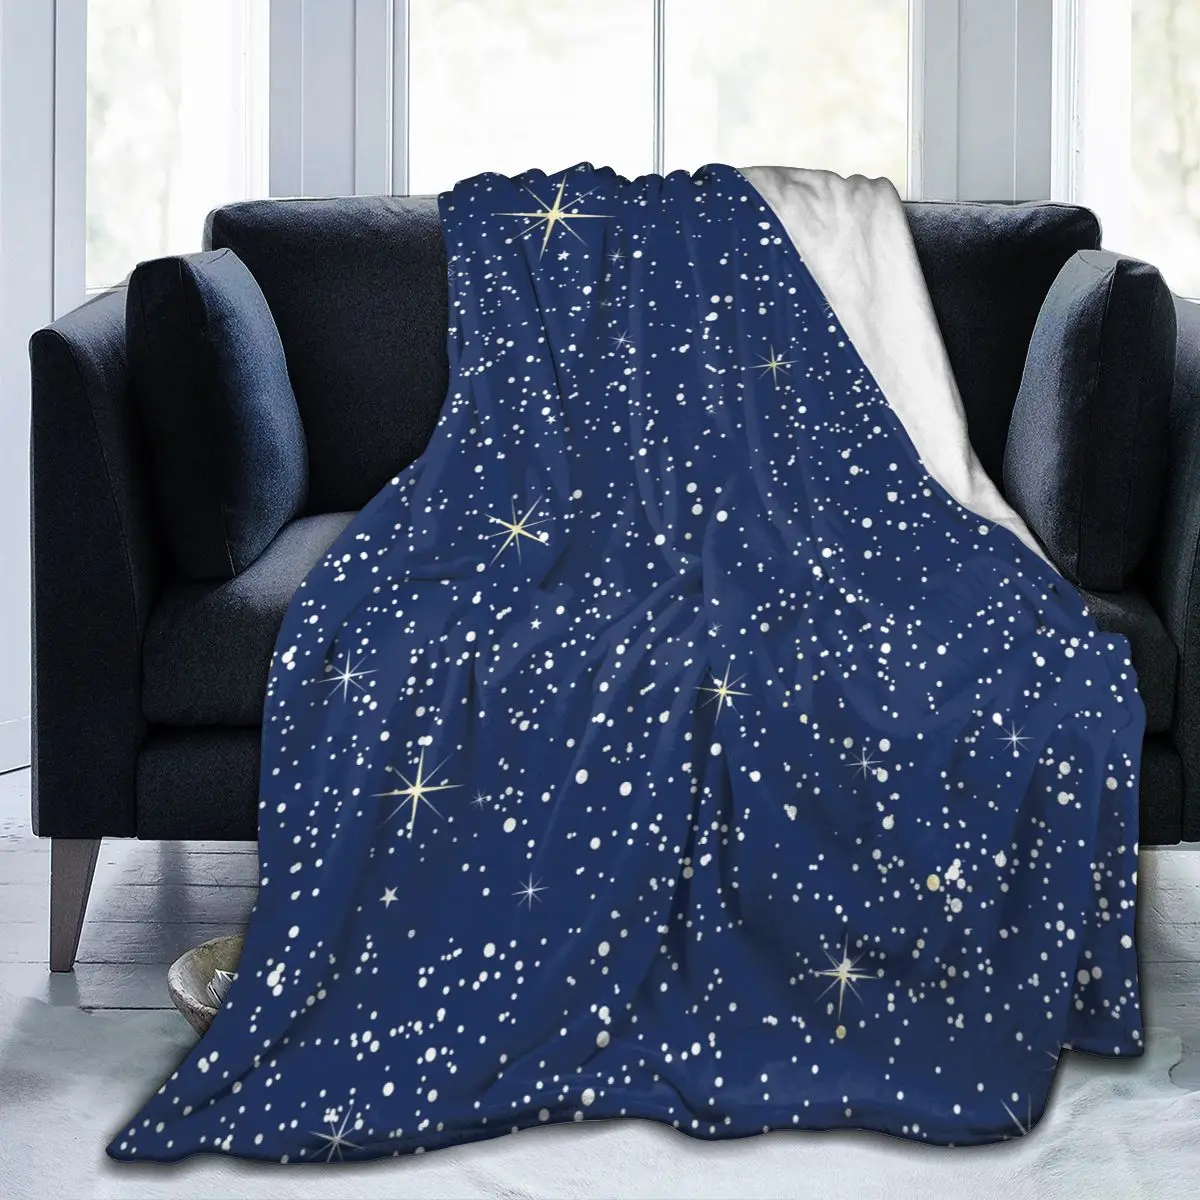 

Мягкое теплое фланелевое одеяло, яркое портативное зимнее одеяло для путешествий с изображением звездной ночи, тонкое покрывало для кроват...